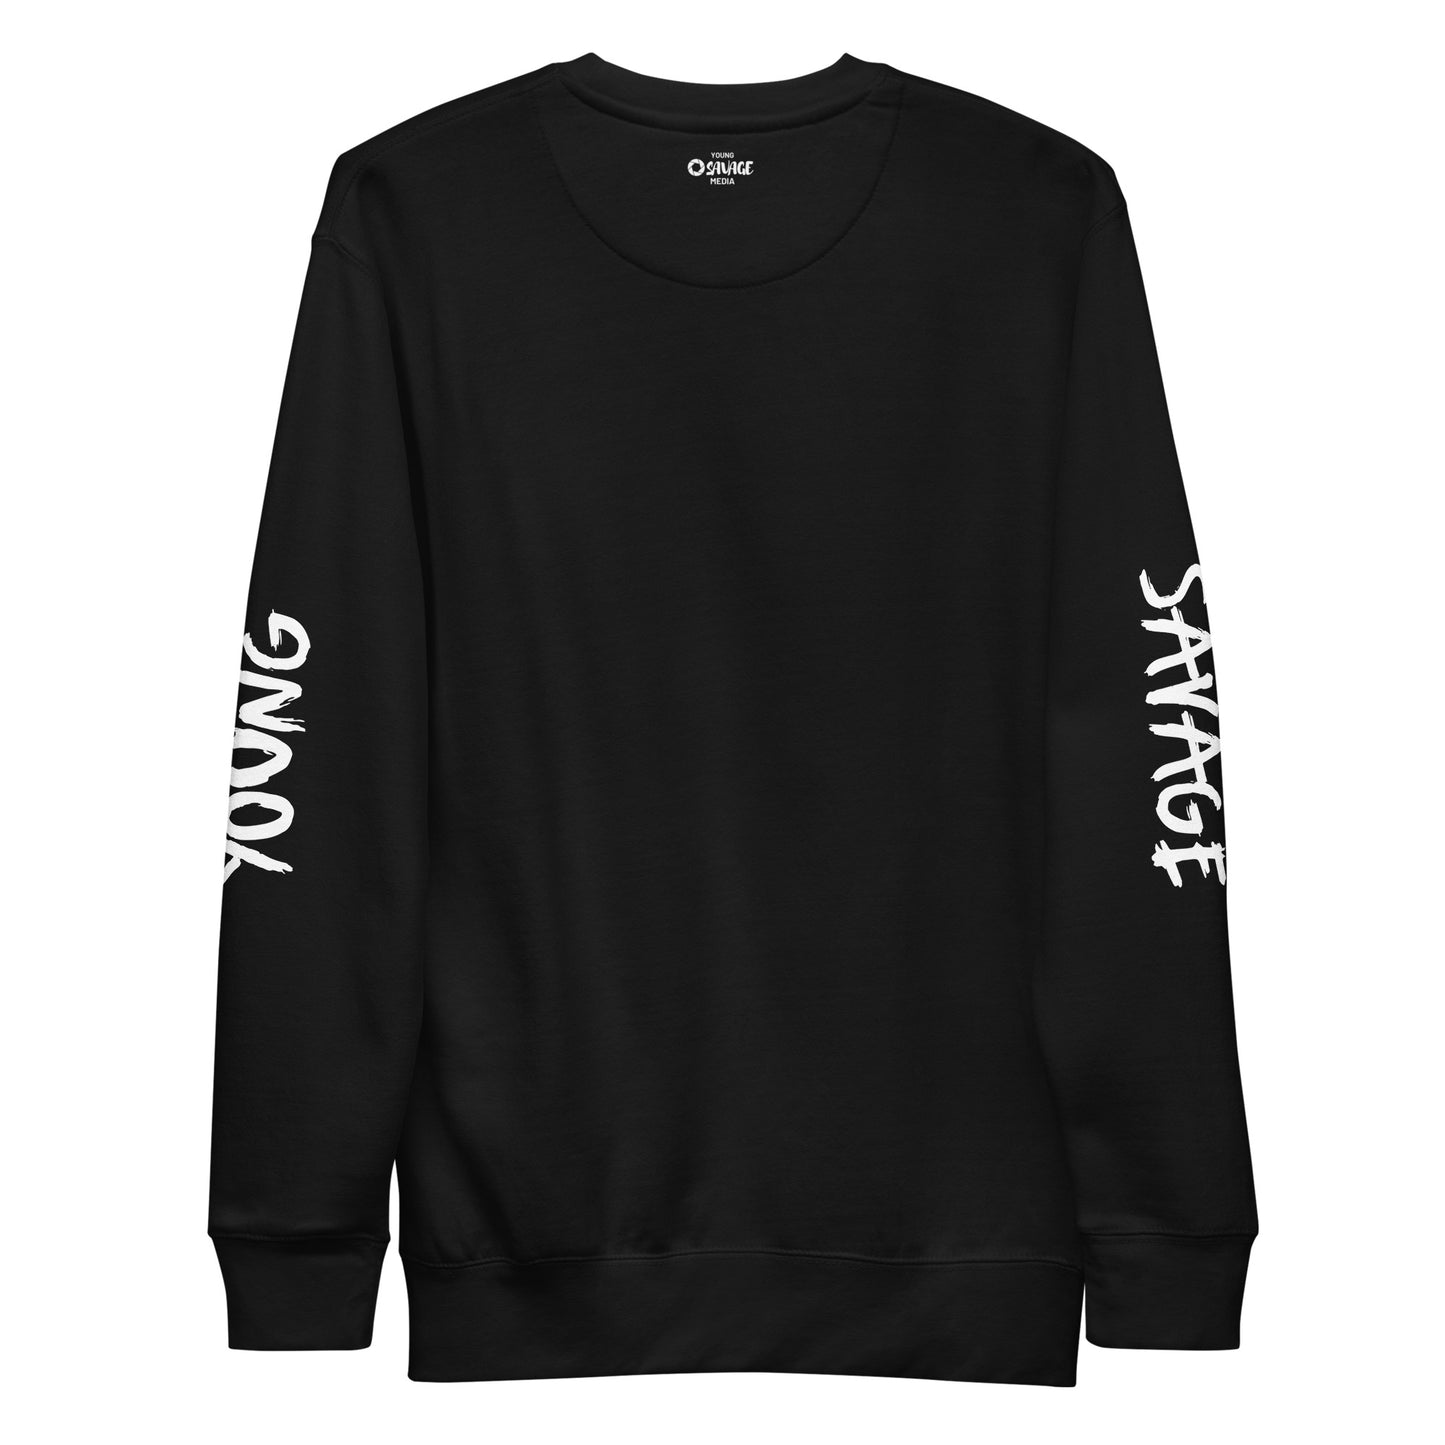 Yahweh - Unisex Premium Sweatshirt